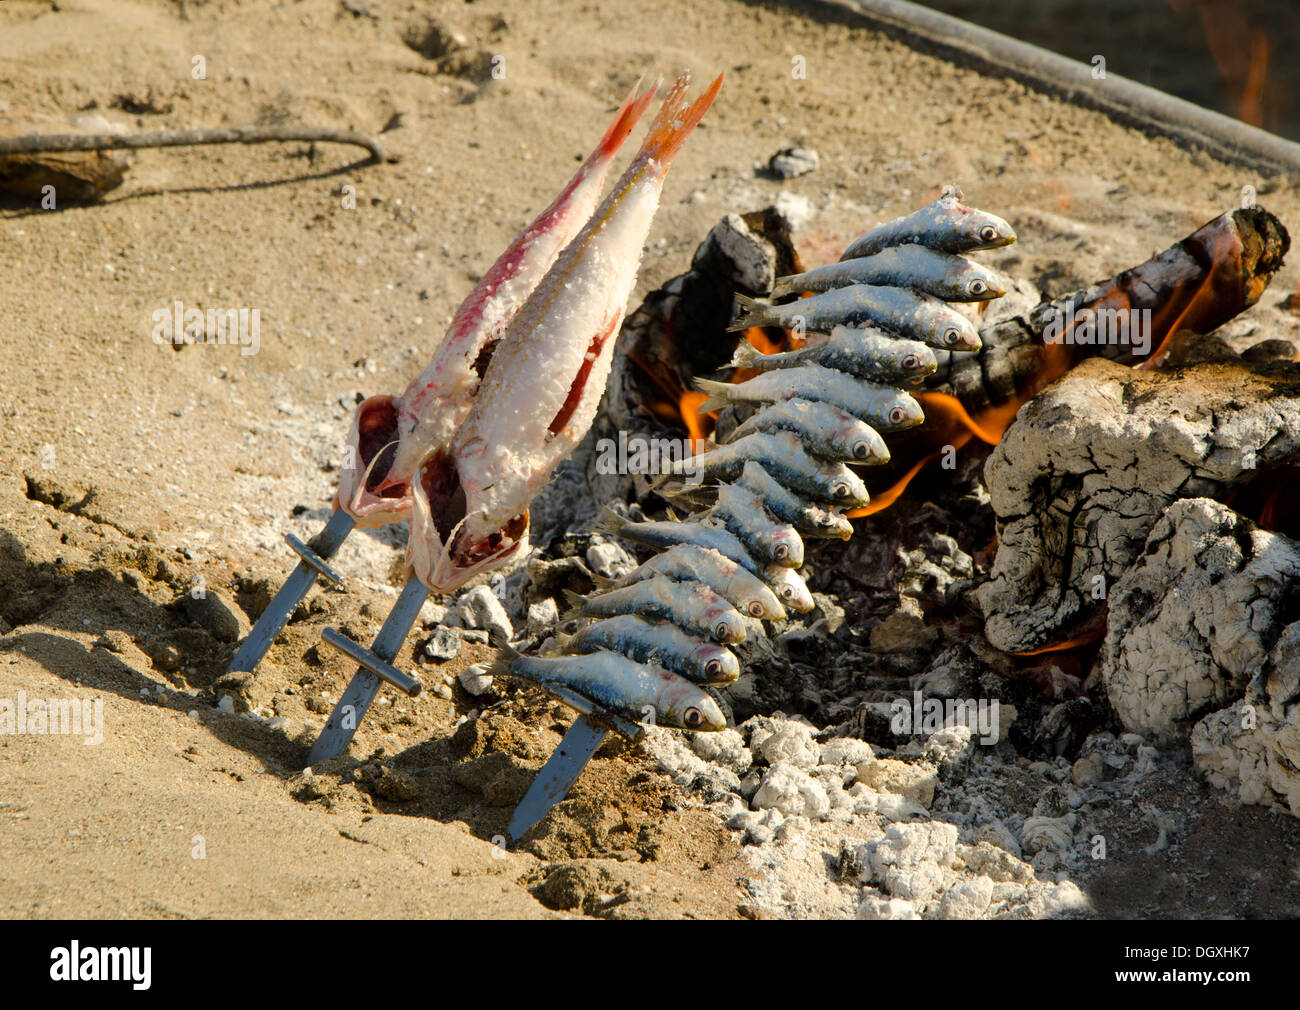 Rouget rayé grillé et les sardines grillées au feu de bois barbecue ouvert, dans le sud de l'Espagne sur la plage. Banque D'Images